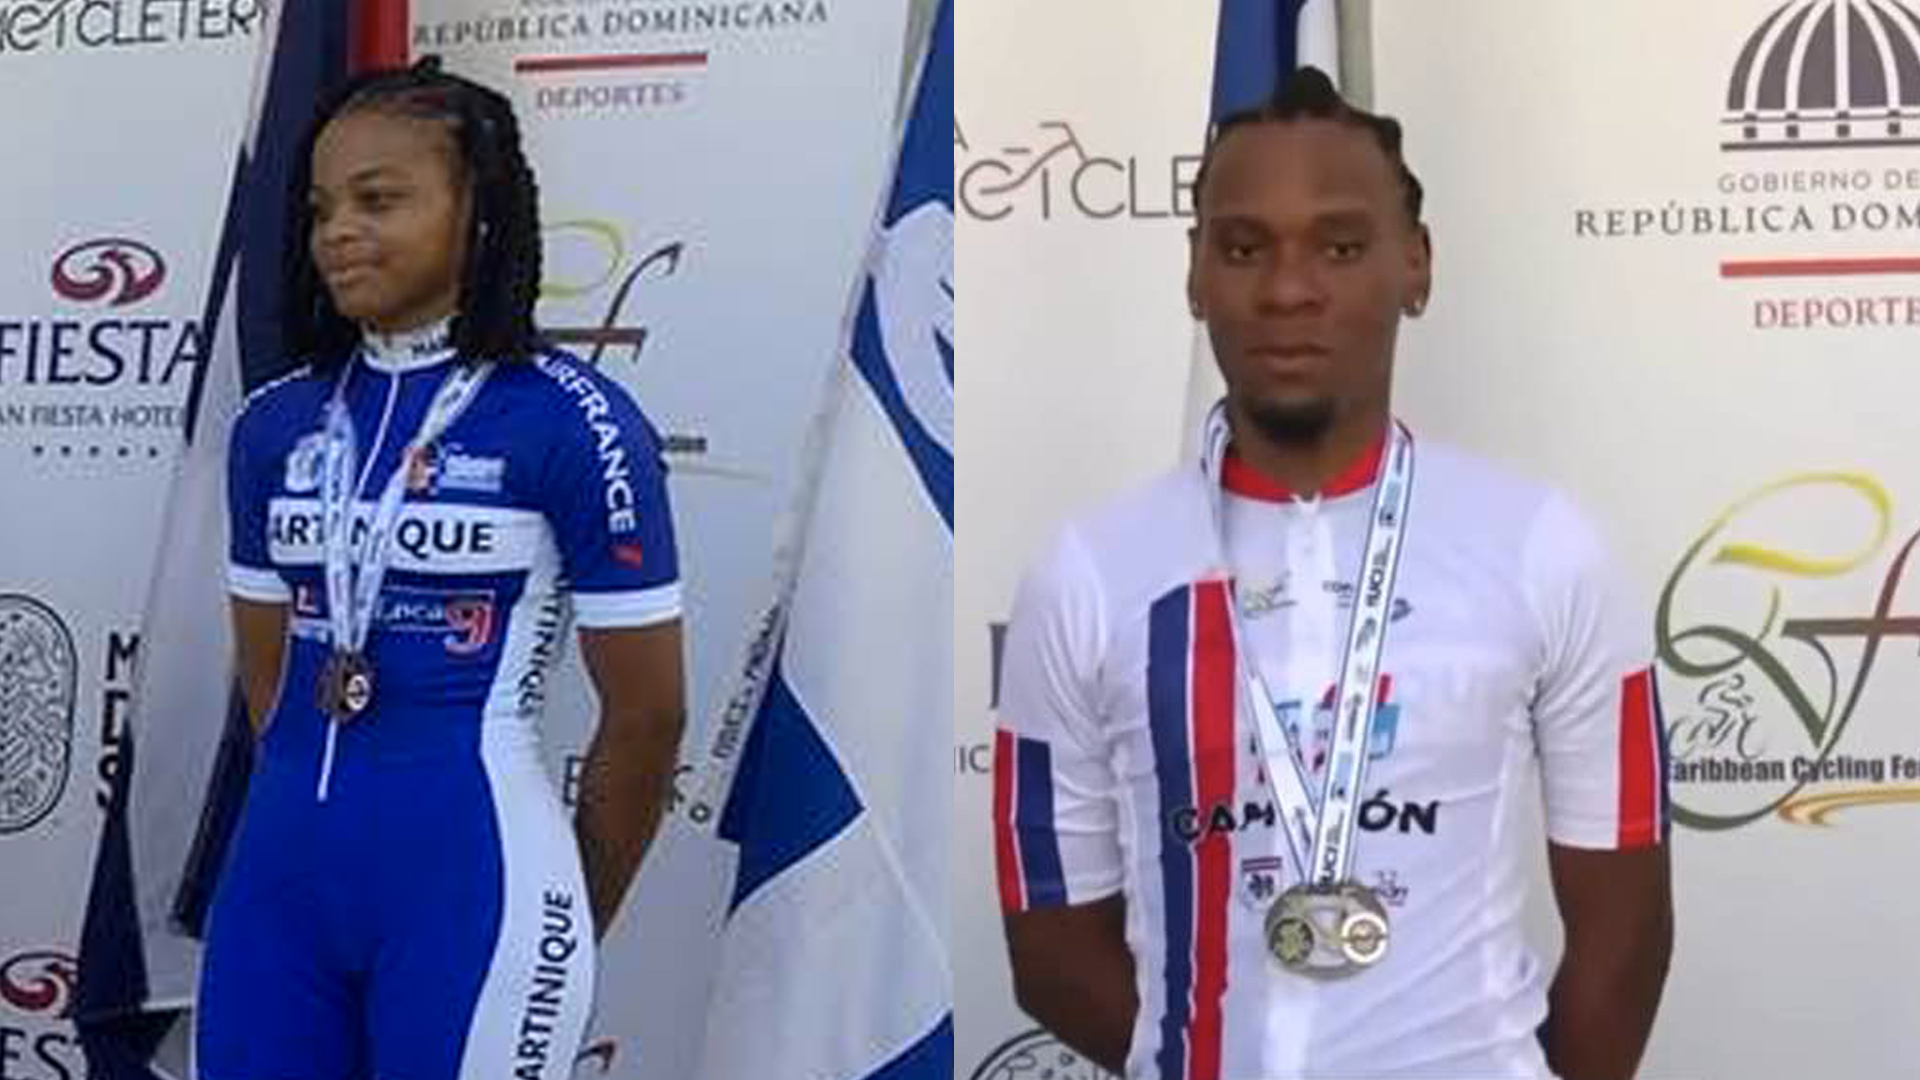     La Martinique brille aux championnats de la Caraïbe de cyclisme

